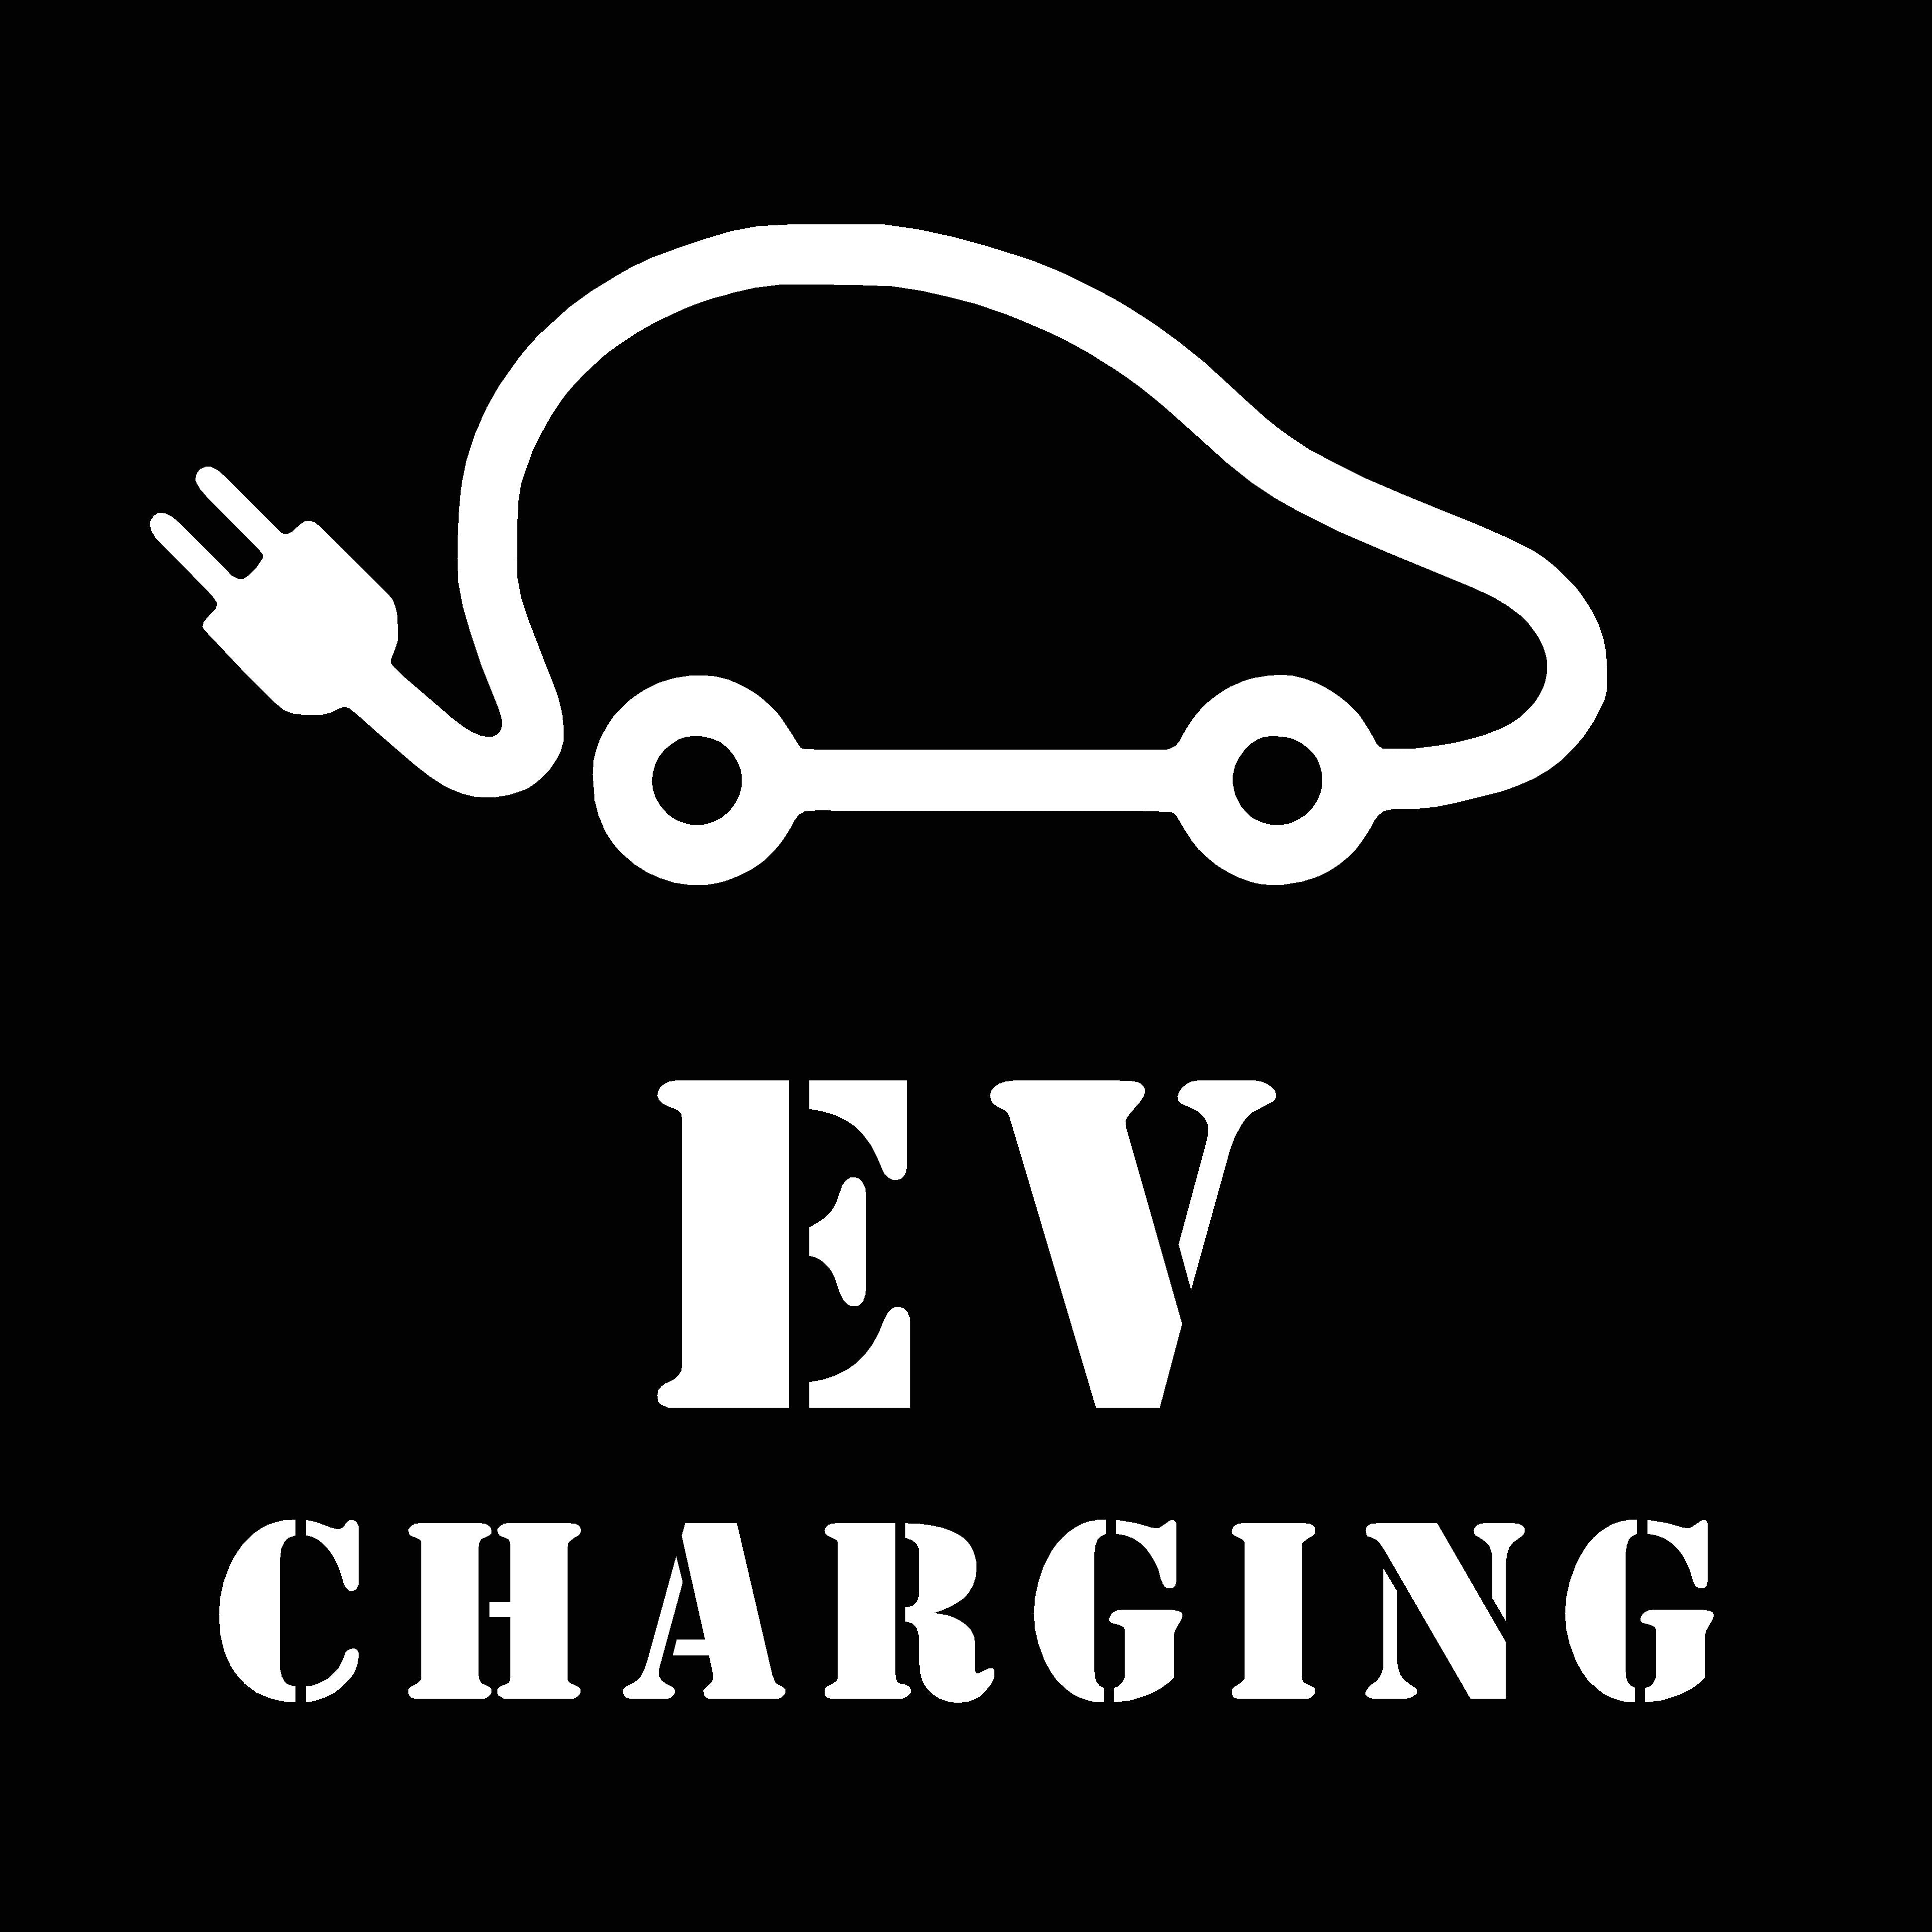 EV Charging Symbol Stencil